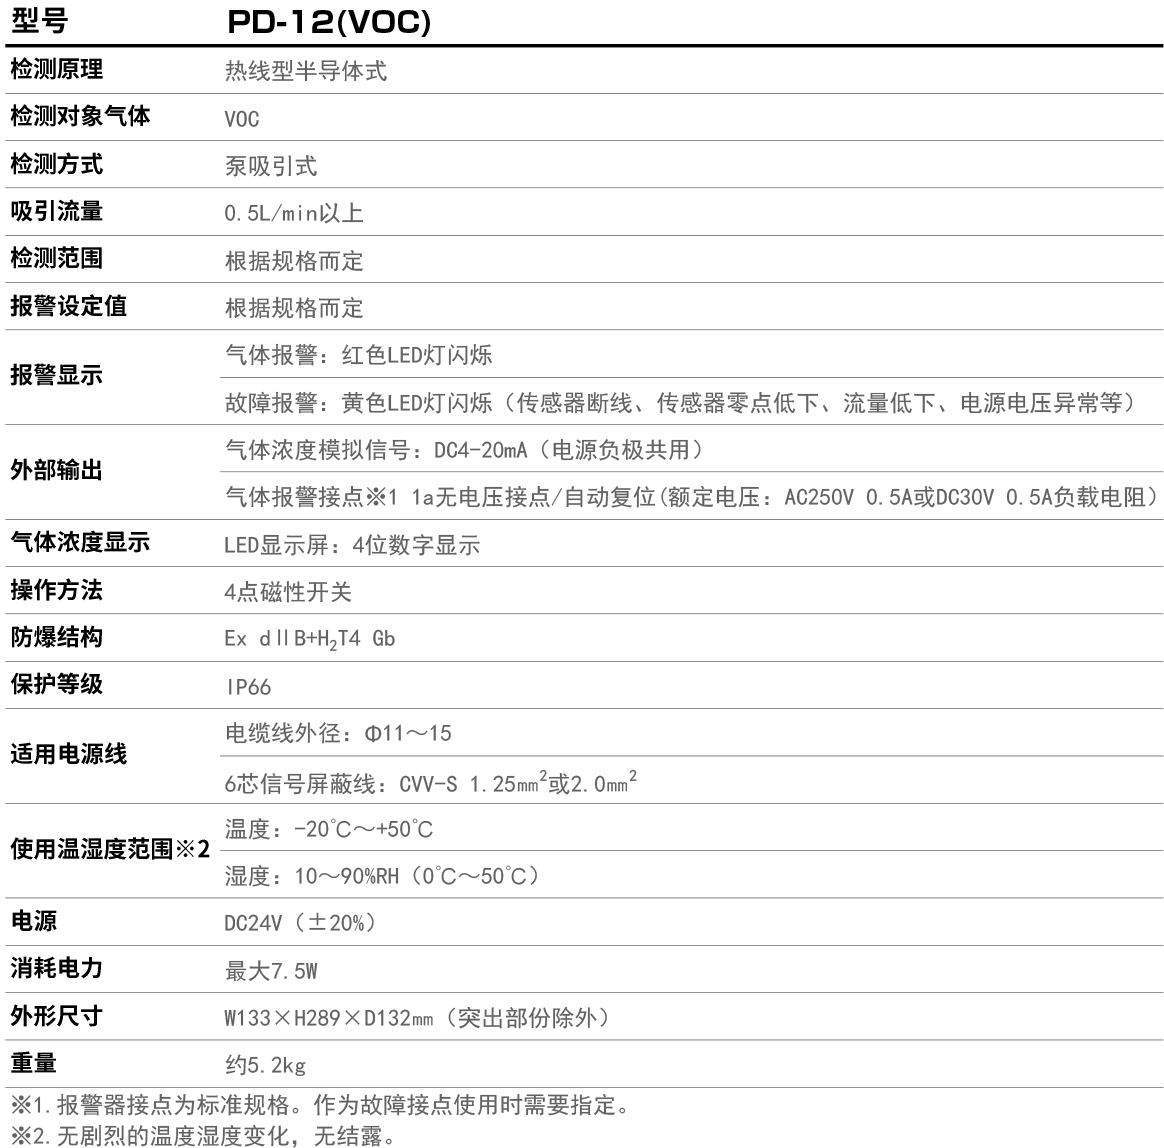 PD-12(VOC)产品参数.jpg